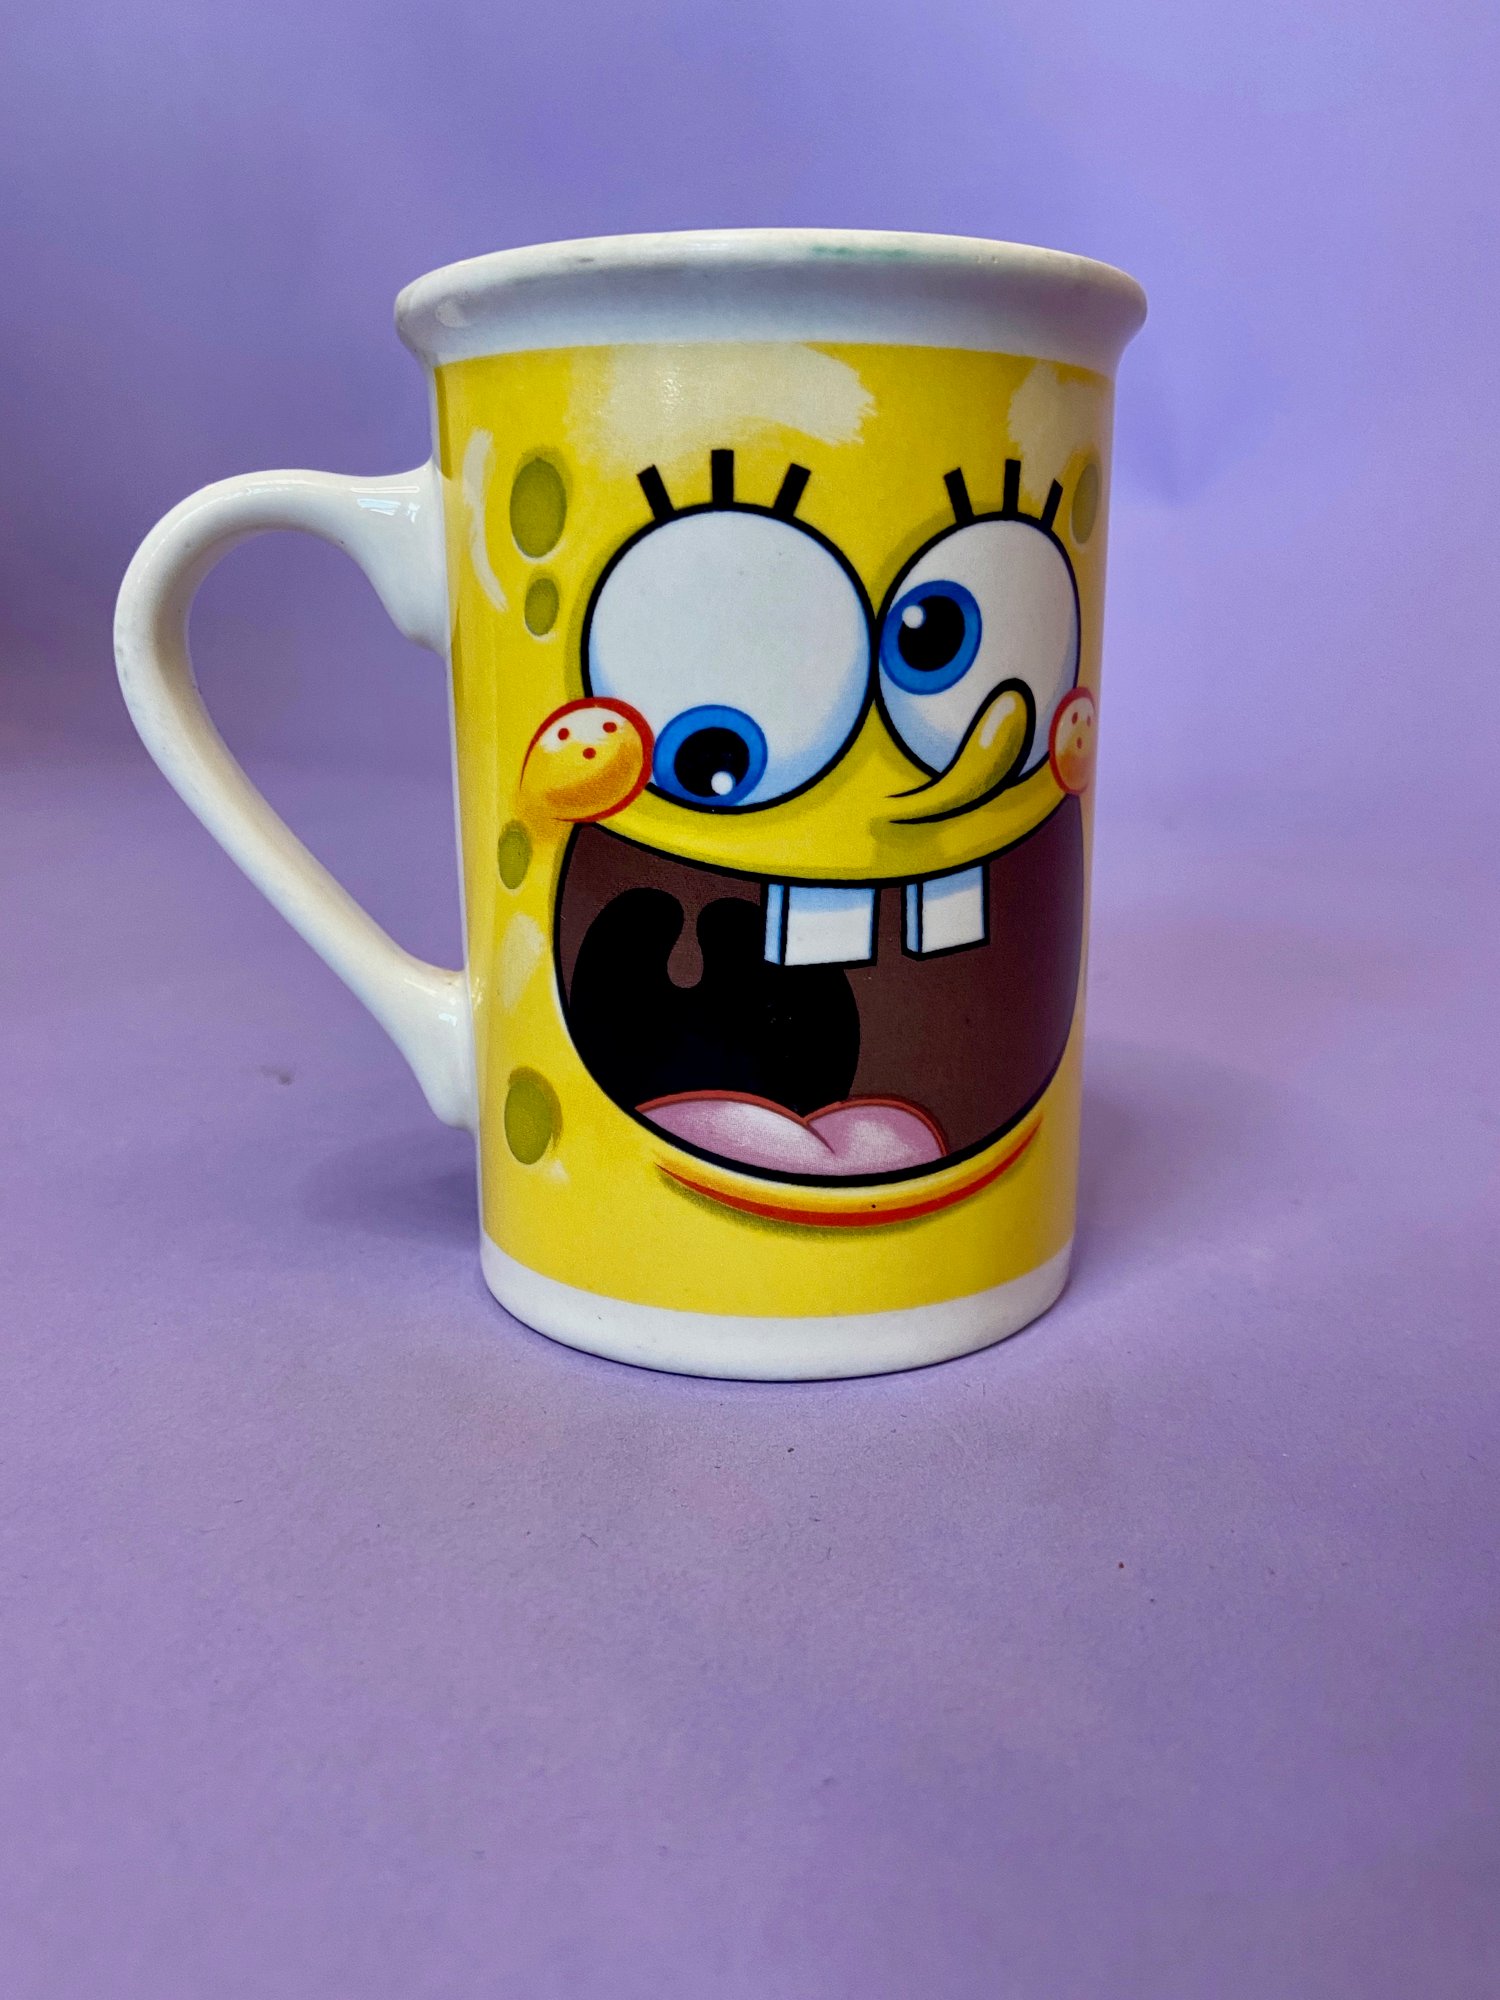 everyone's favorite sponge mug